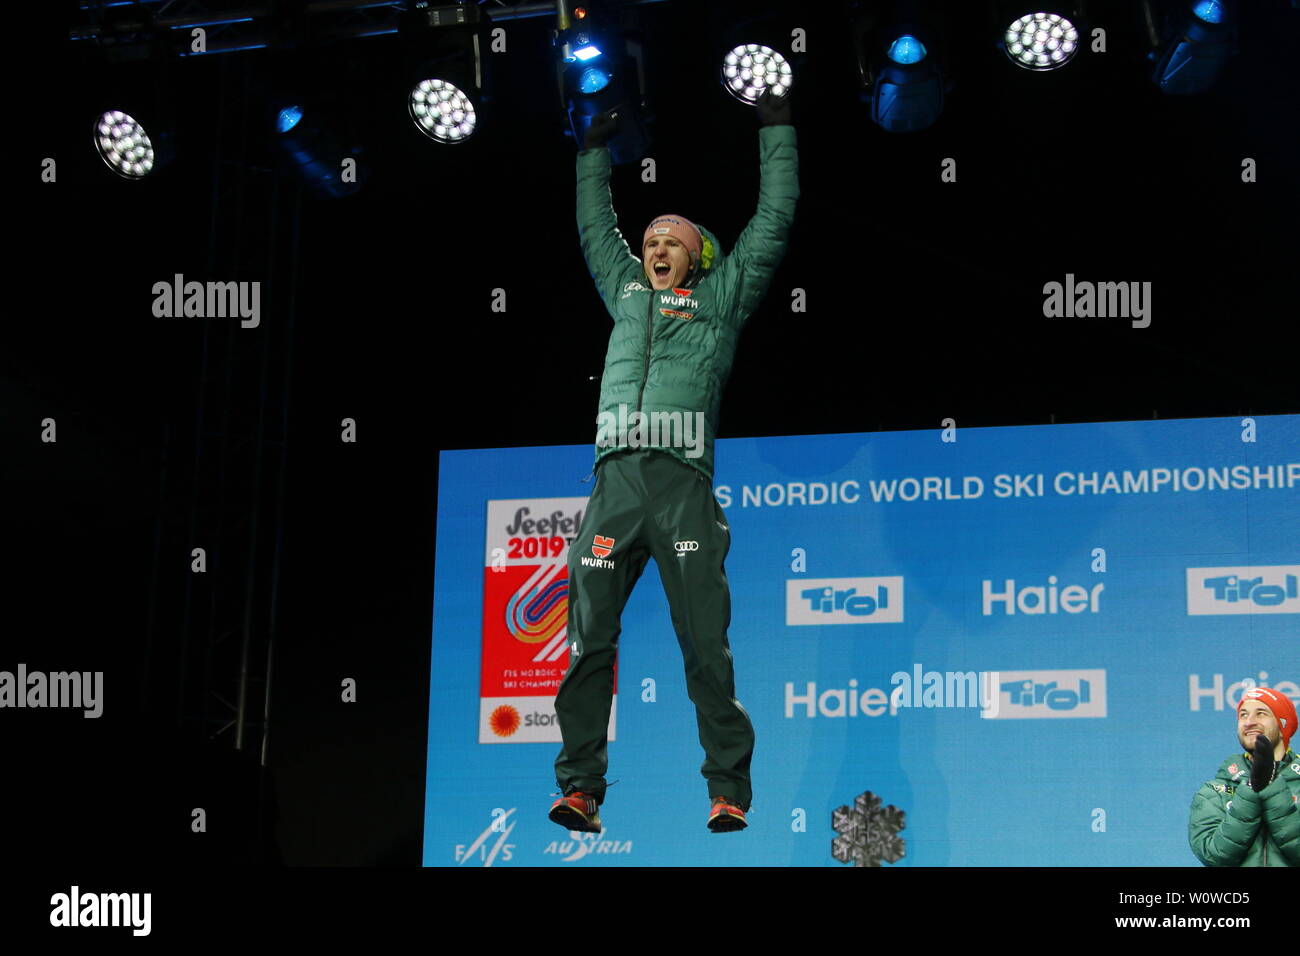 Karl Geiger (SC Oberstdorf) bei der Medaillenvergabe auf der Medal Plaza Skispringen Herren, Nordische FIS SKI-WM 2019 in Innsbruck Foto Stock